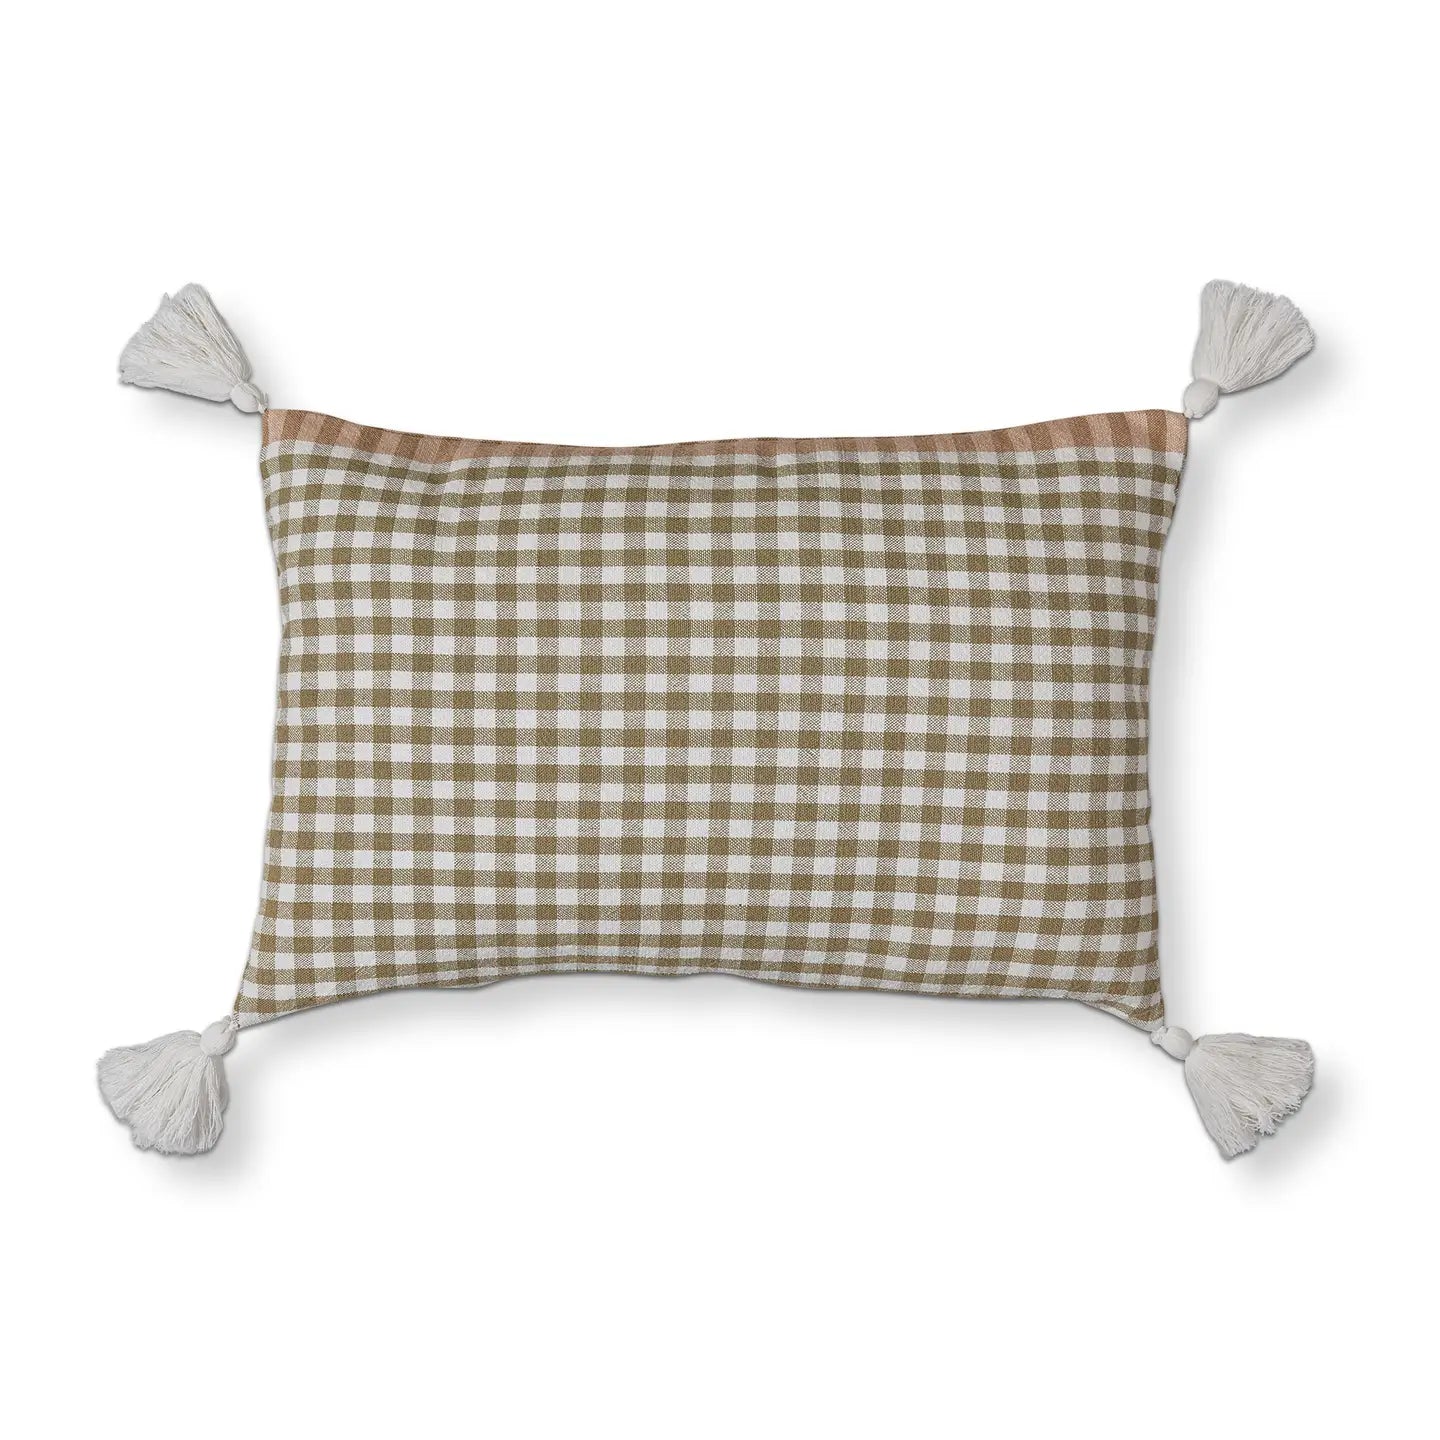 Woven Lumbar Pillow - Taupe